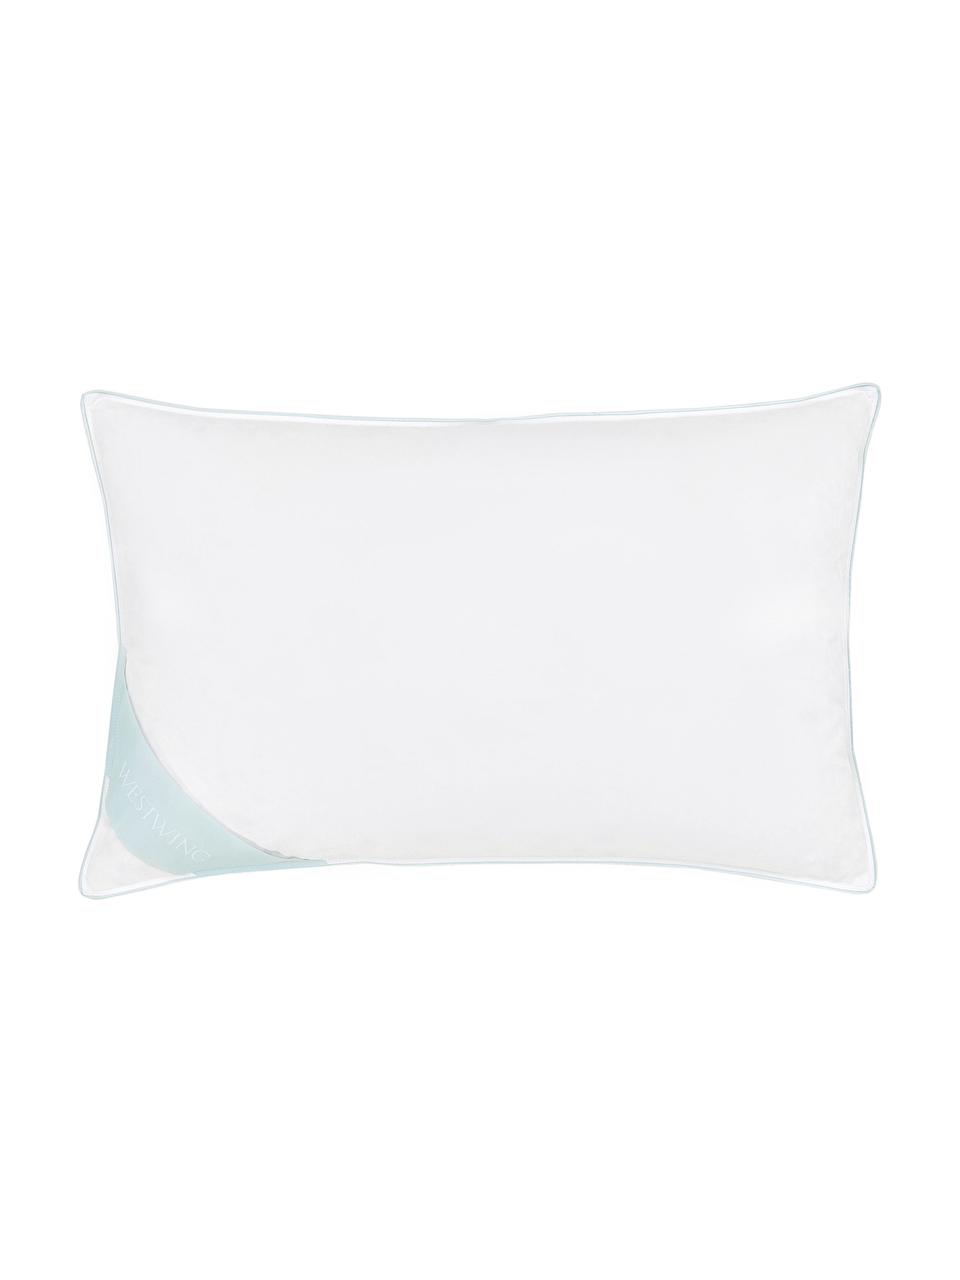 Cuscino in piuma Comfort, duro, Bianco con fascia di stoffa in raso turchese, Larg. 50 x Lung. 80 cm